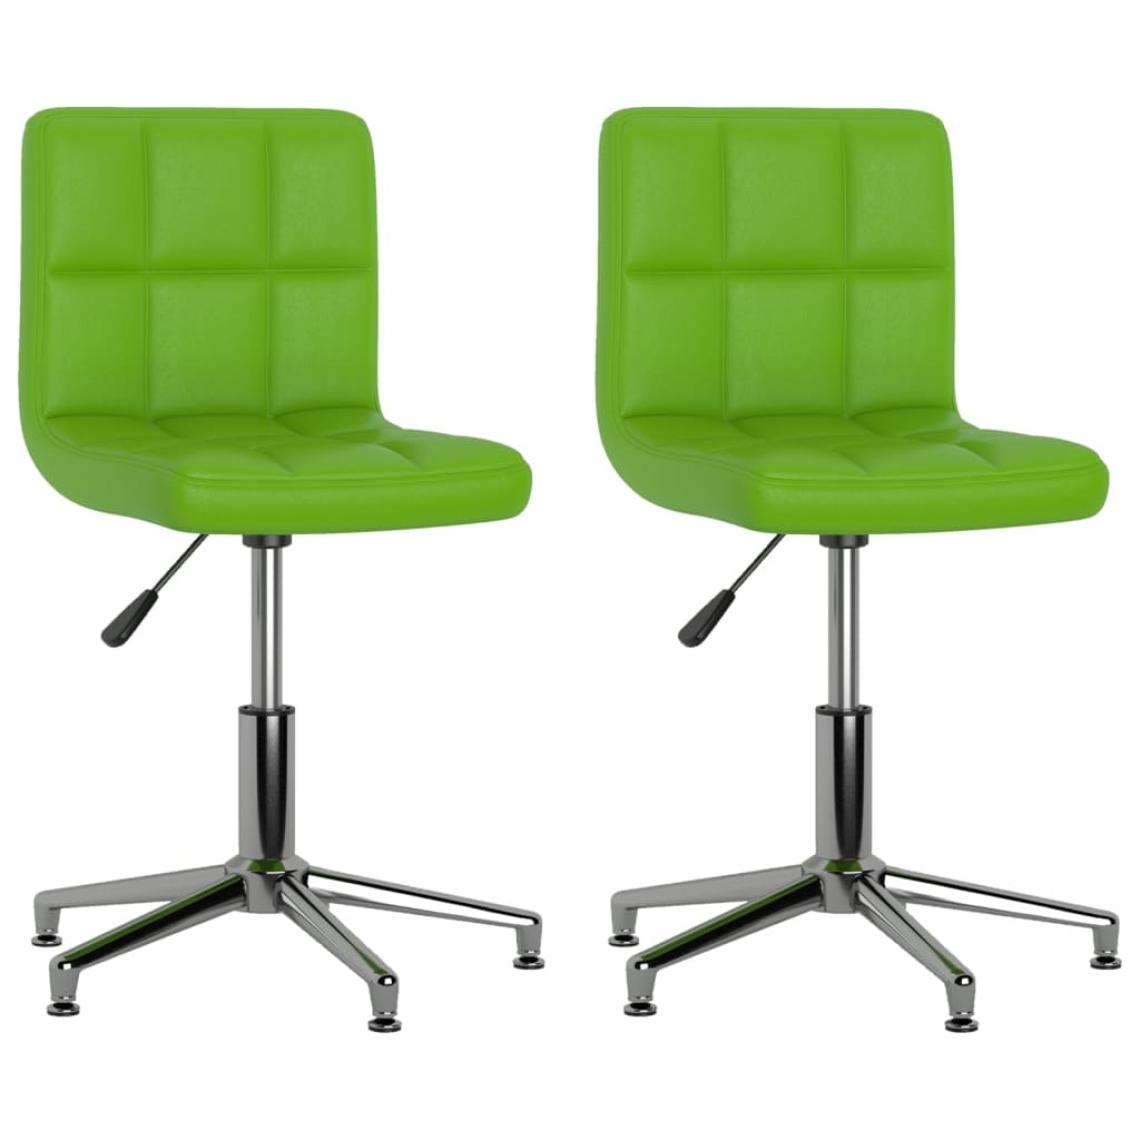 Decoshop26 - Lot de 2 chaises de salle à manger cuisine pivotantes design moderne similicuir vert CDS020943 - Chaises